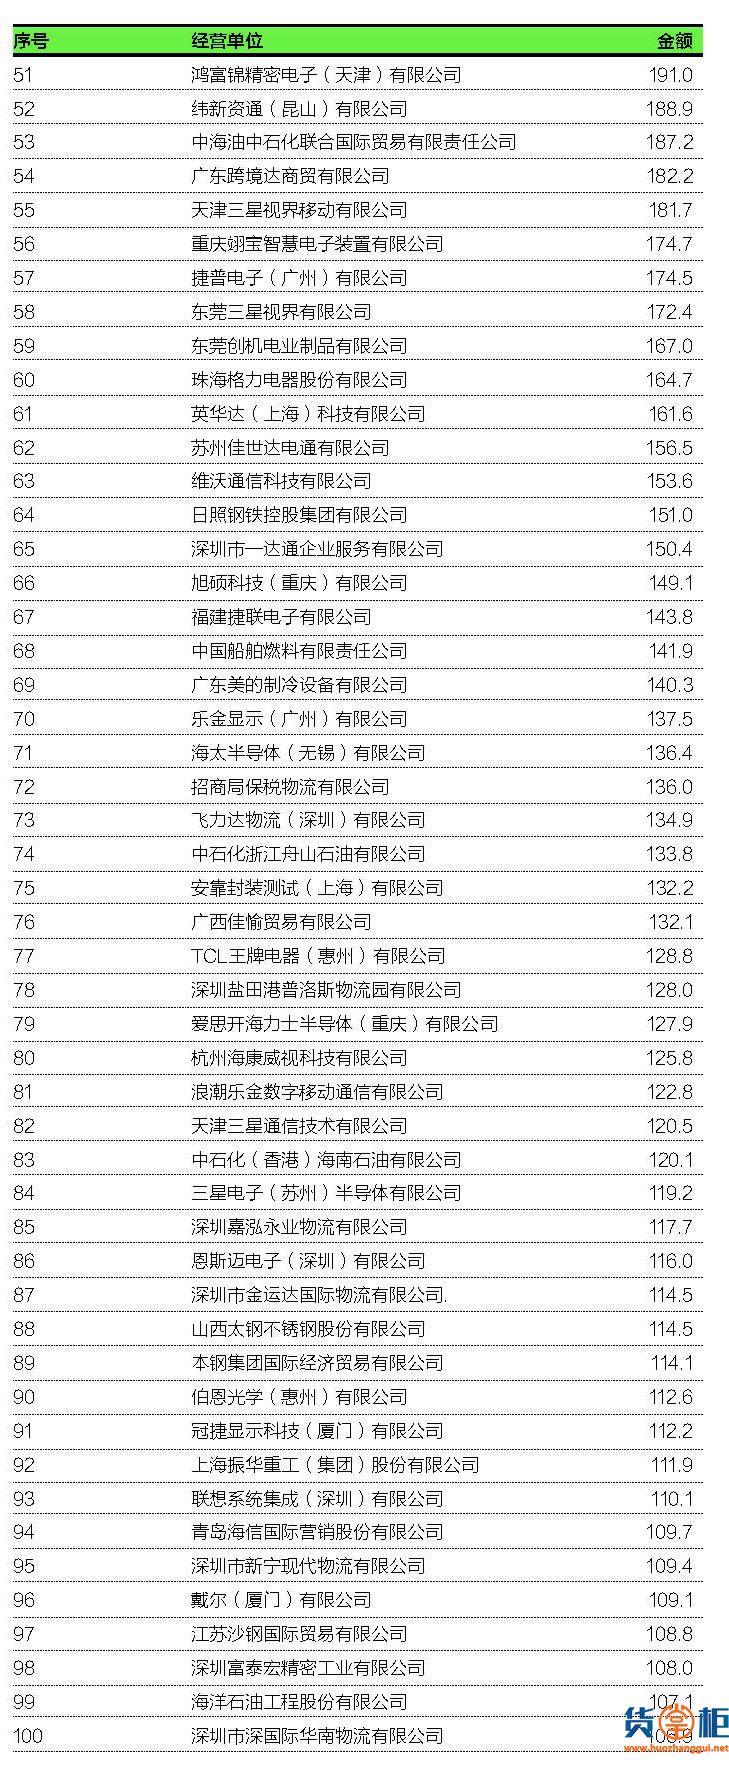 2018中国进出口企业200强榜单出炉